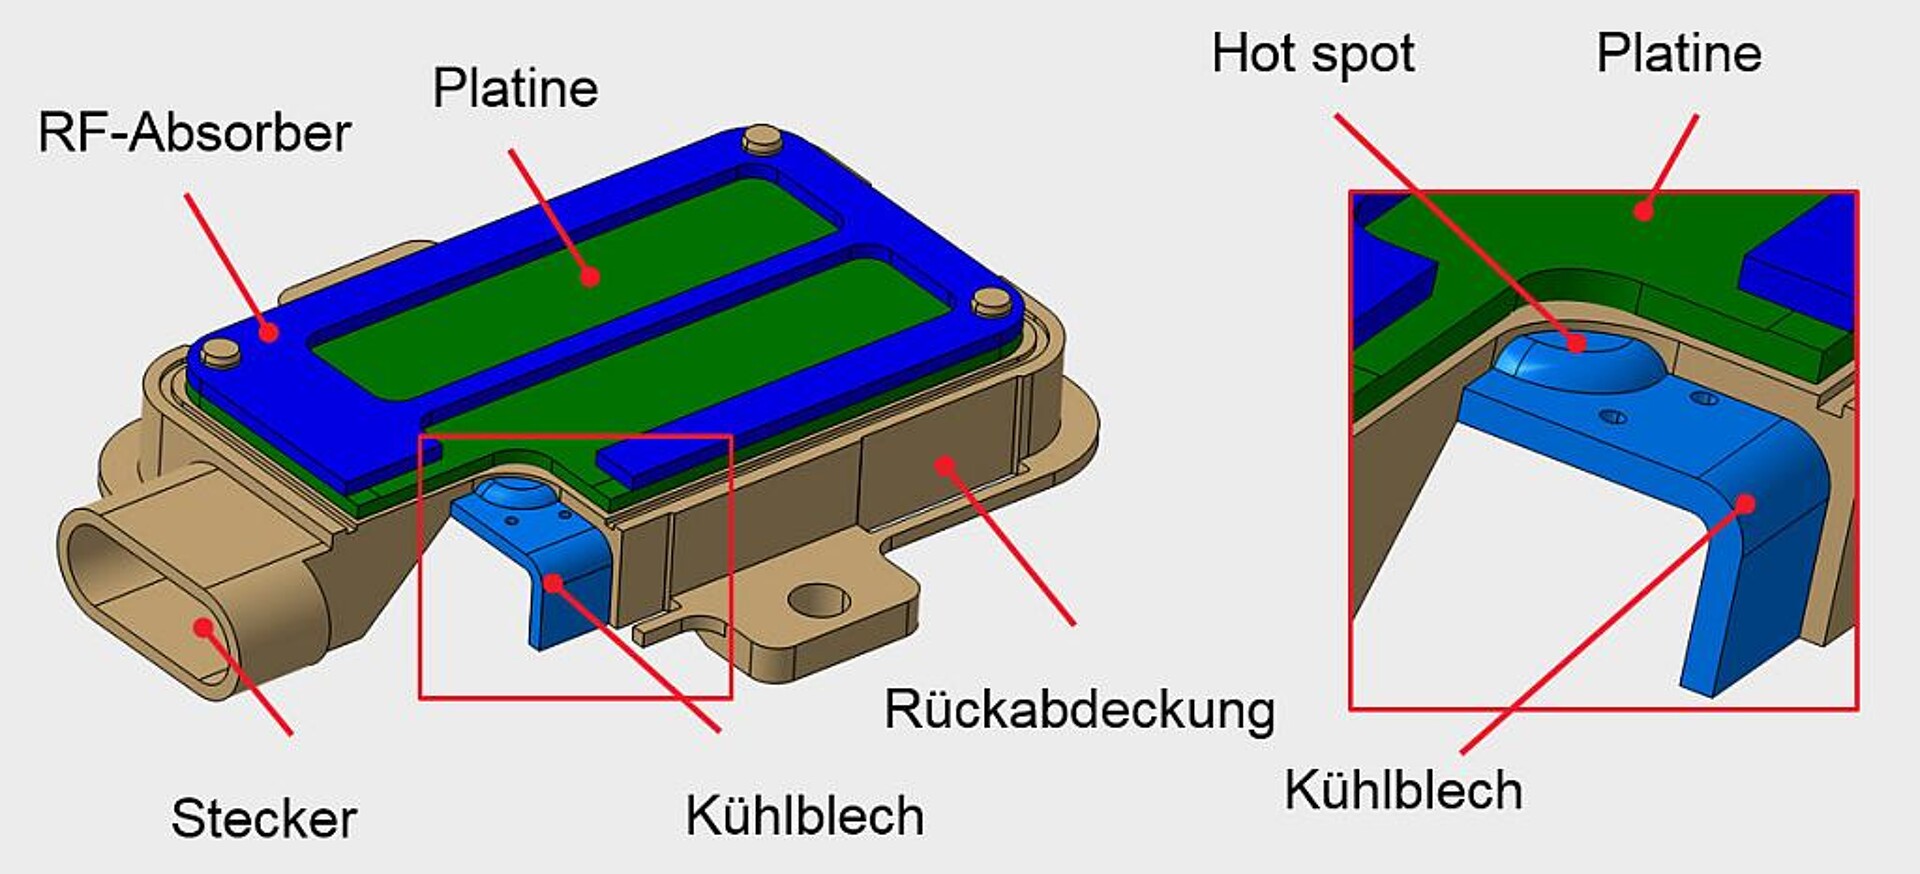  Das Konzept für Radarsensoren sieht eine Wärmeabfuhr aus heißen Bereichen (hot spots) mit Hilfe von thermisch leitfähigen Kunststoffen in Kombination mit metallischen Kühlelementen vor. (Abb.: Lanxess)